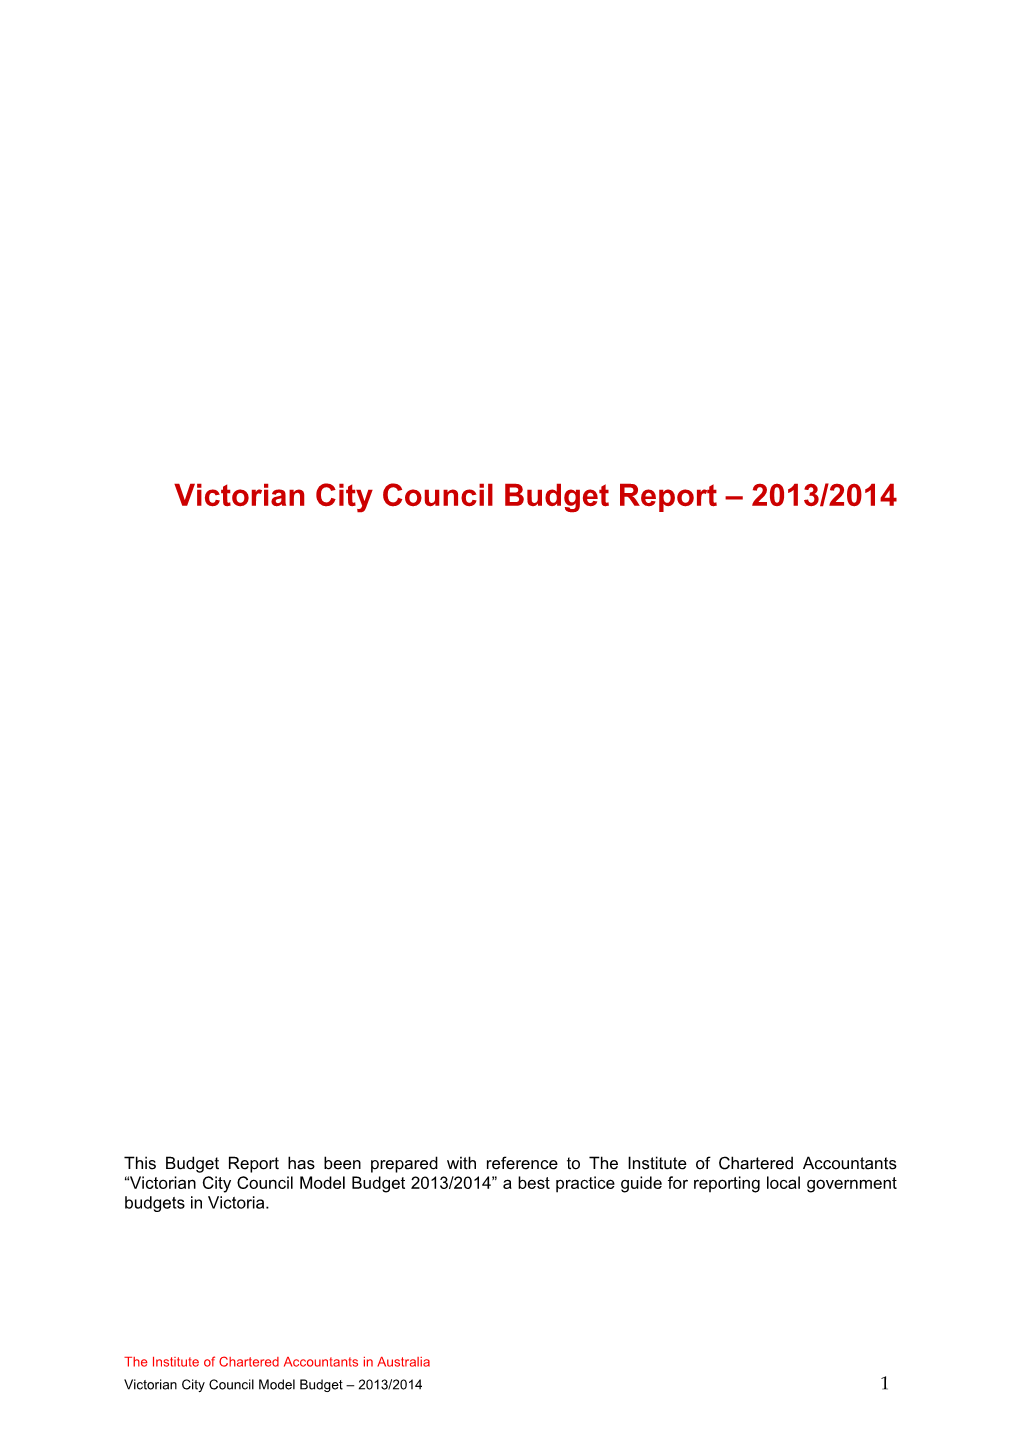 Victorian City Council Budget Report 2013/2014